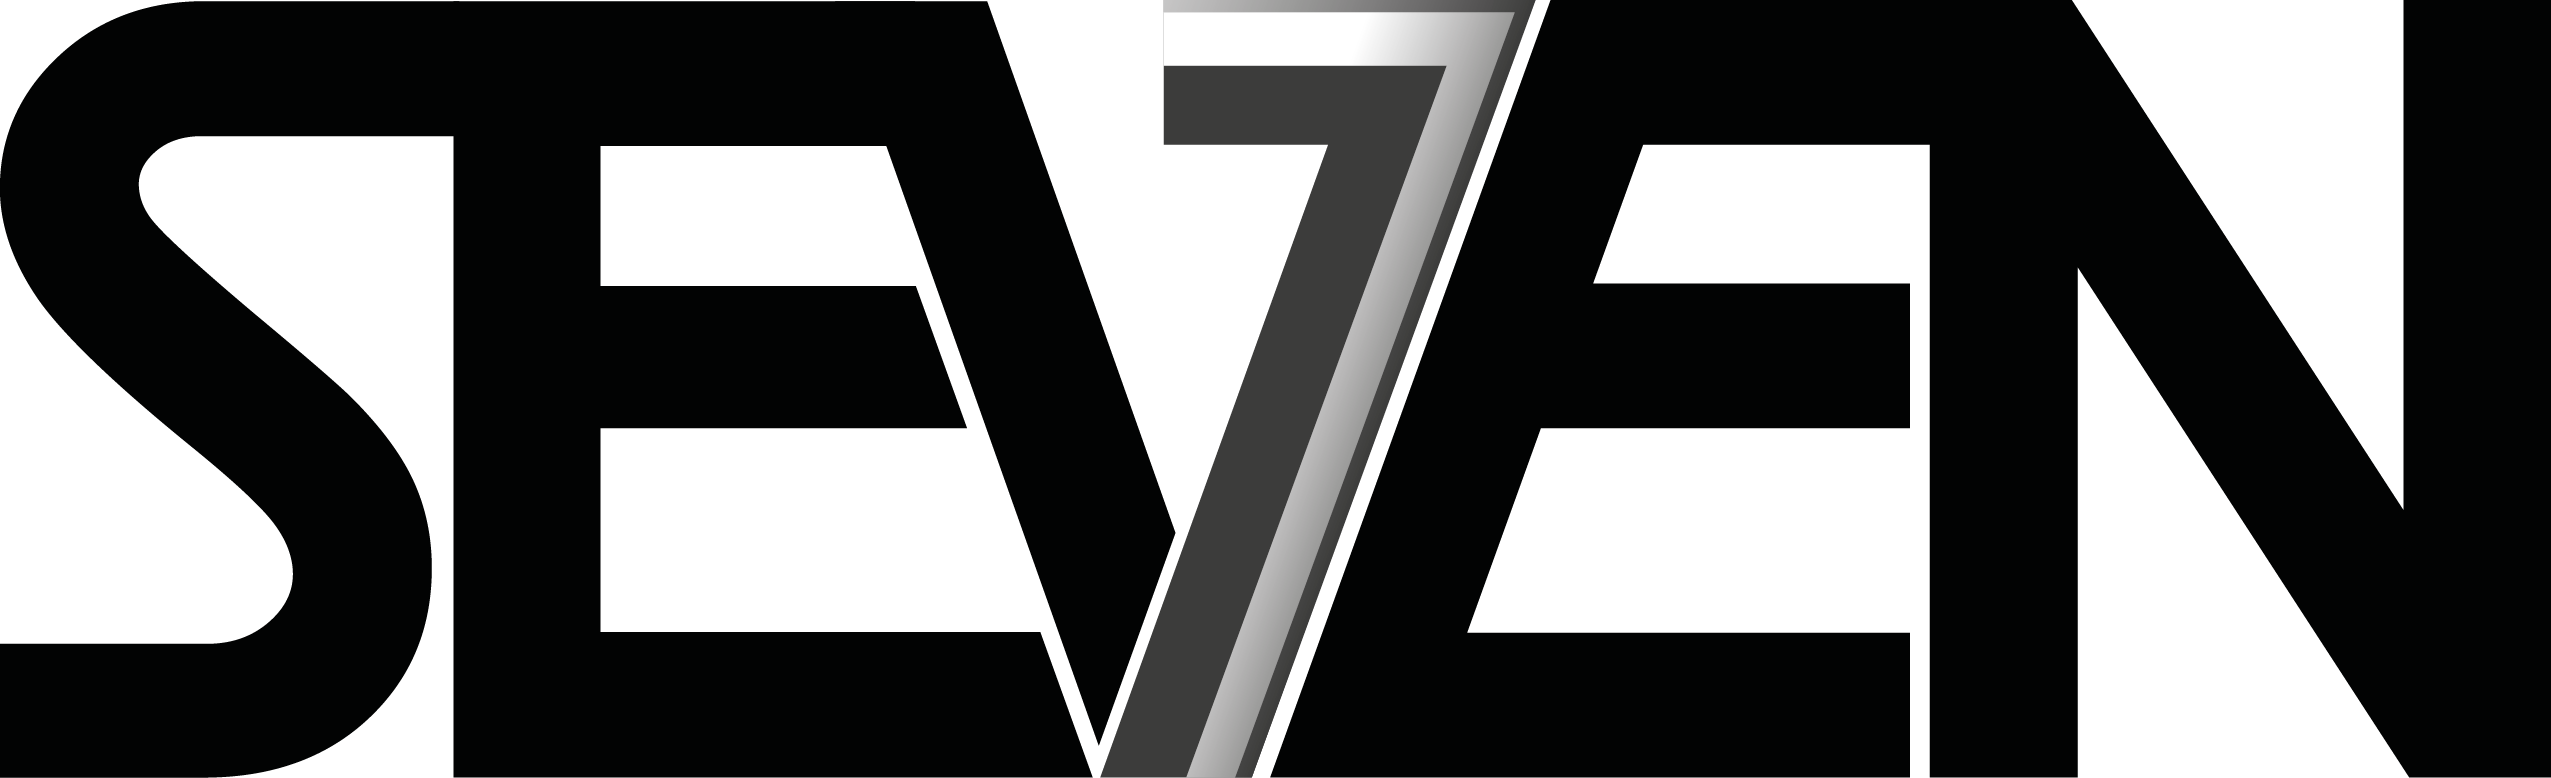 7 logo png. Seven надпись. Семь лого. Семь логотип. Логотип 7m.